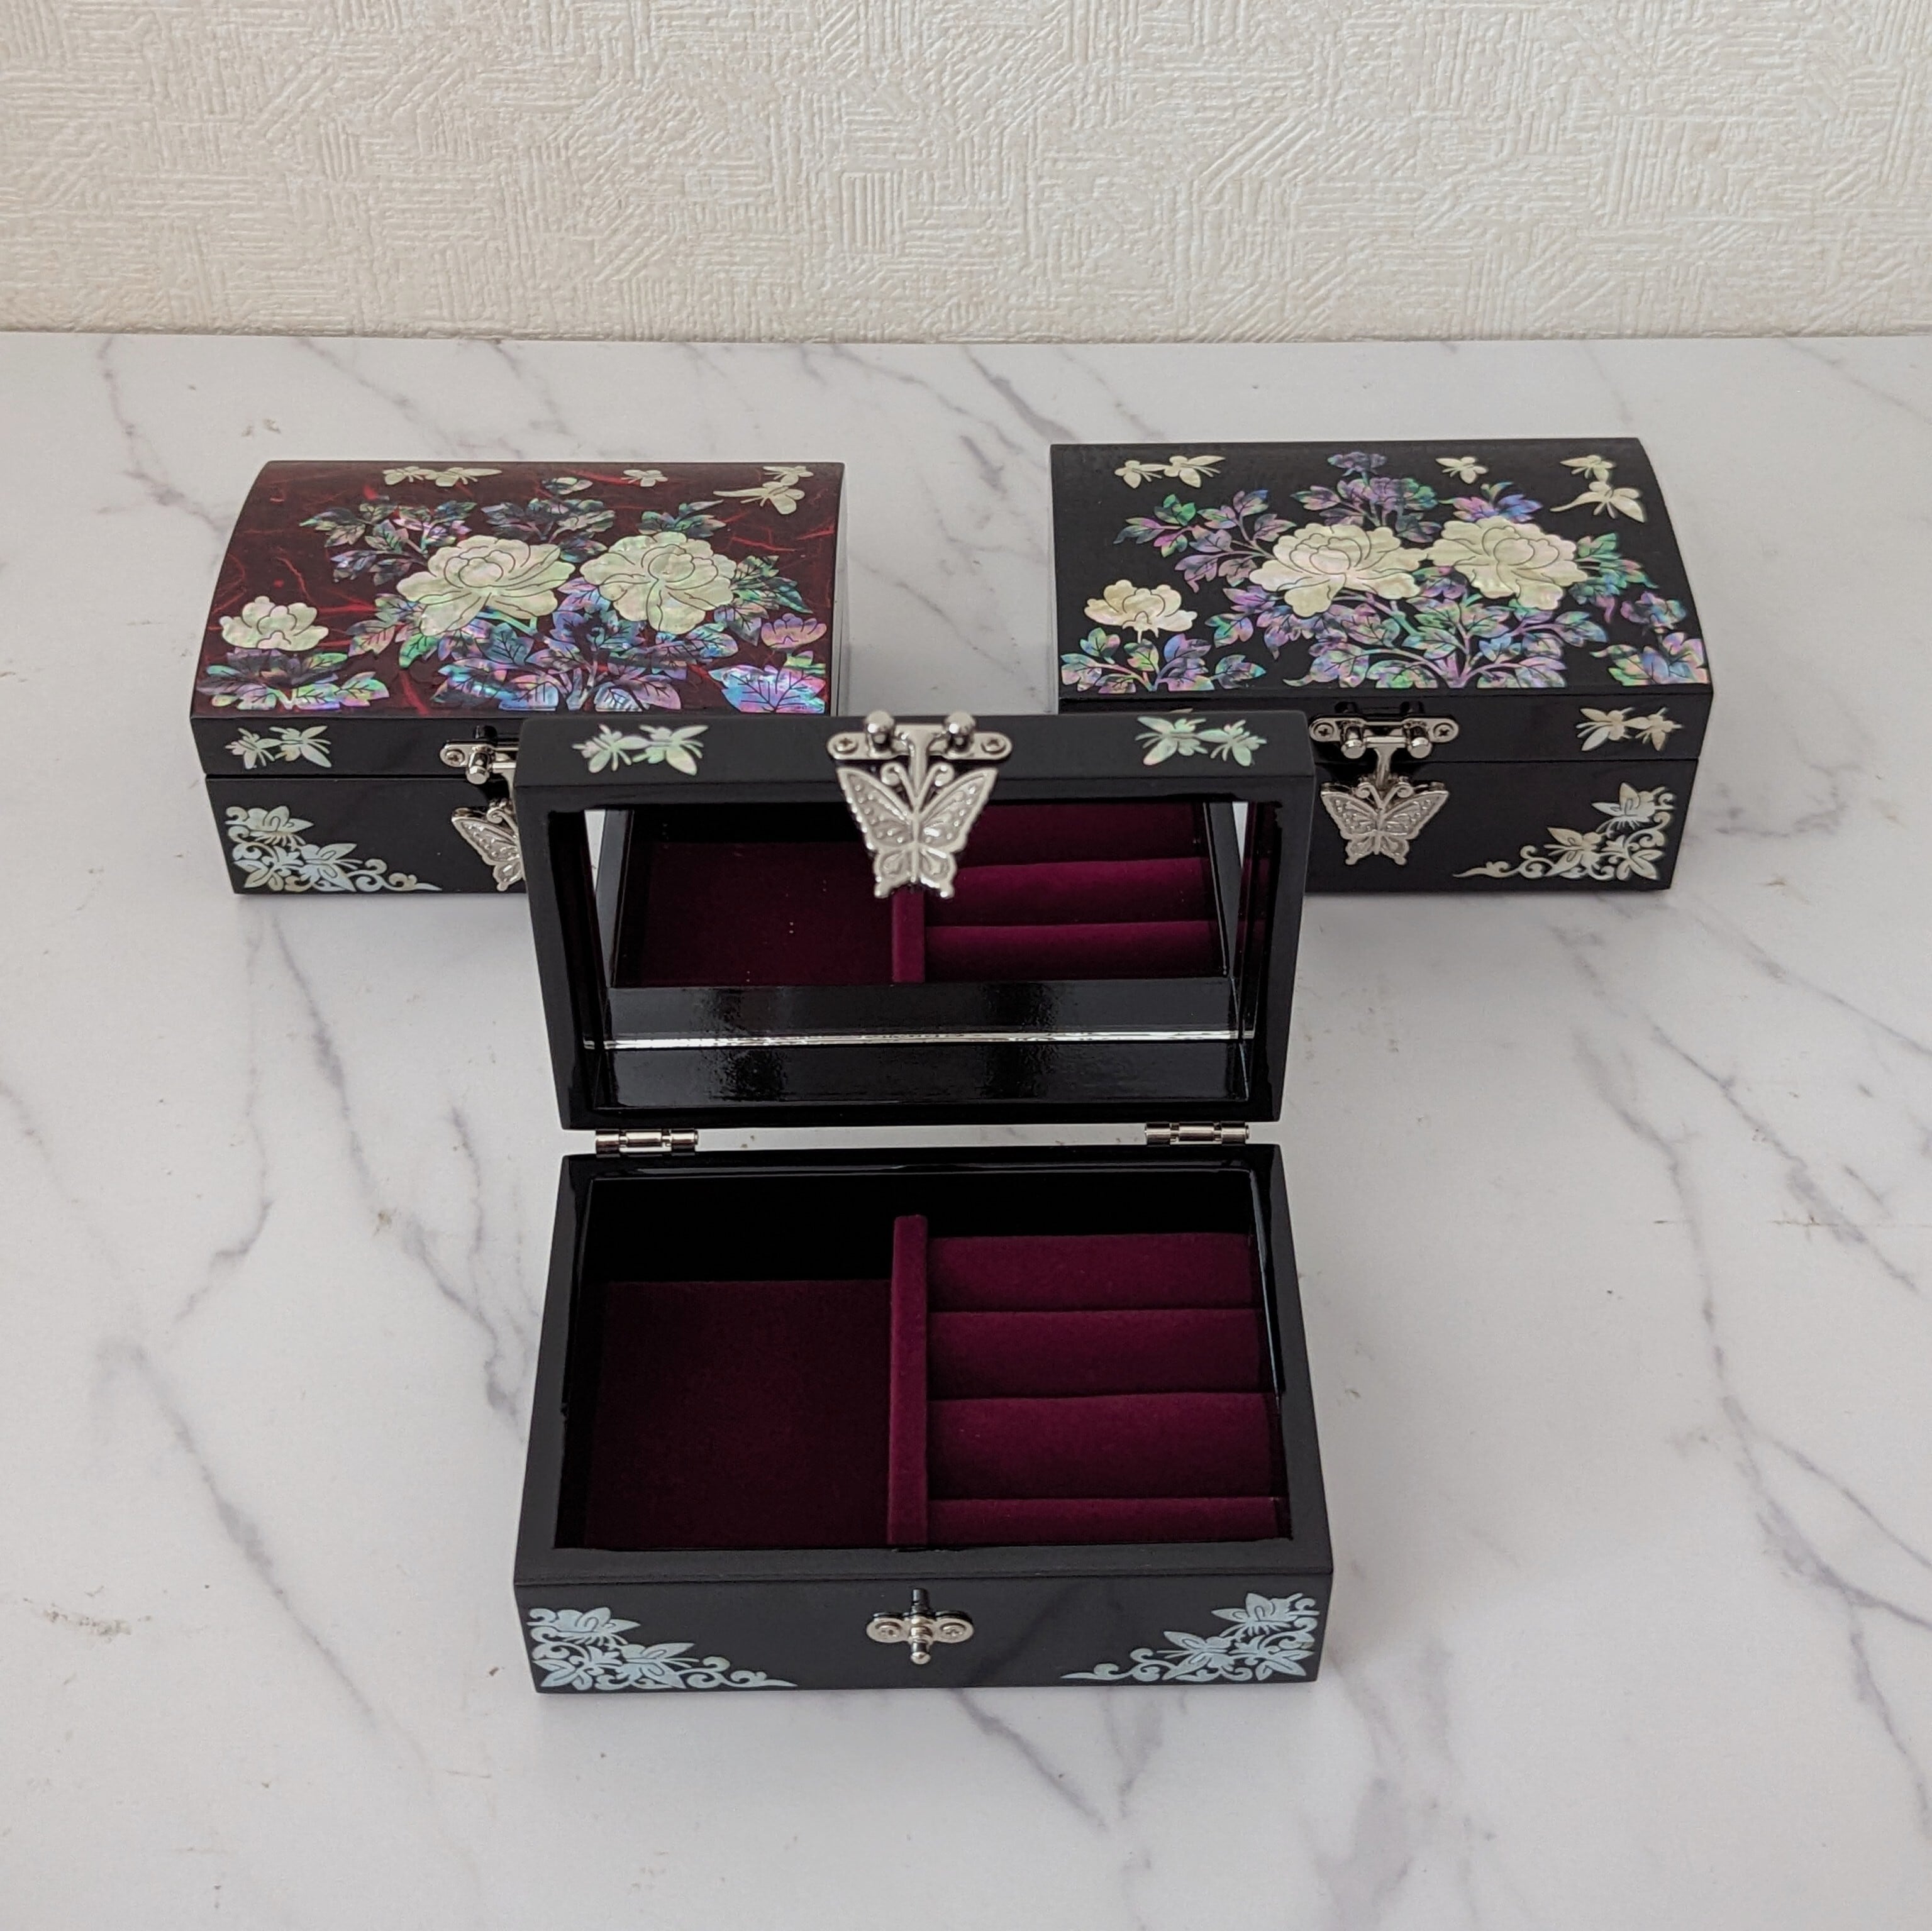 螺鈿細工 ジュエリーボックス 高貴な花の女王たち | 韓国螺鈿細工小物